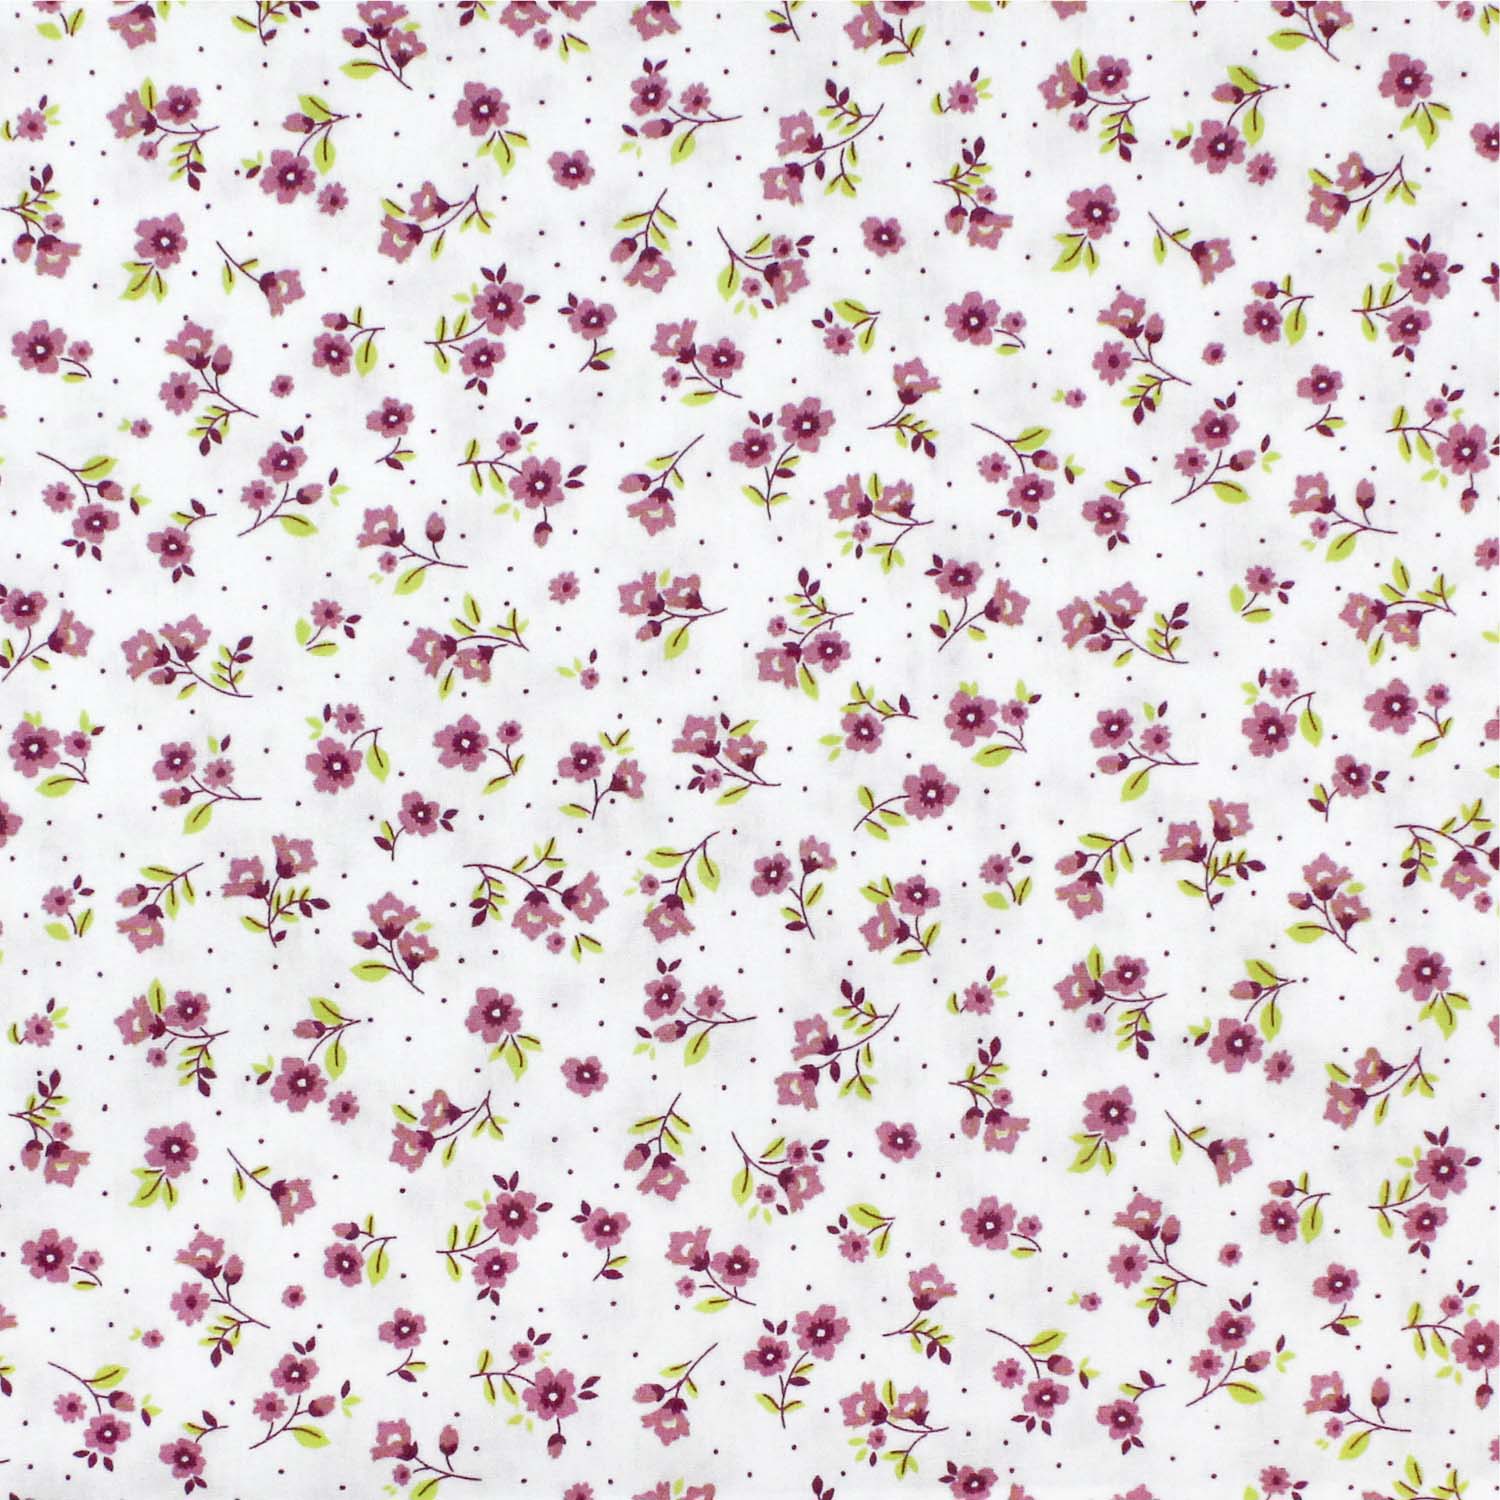 tecido-tricoline-flores-pequenas-rosa-fundo-branco-della-aviamentos-10958